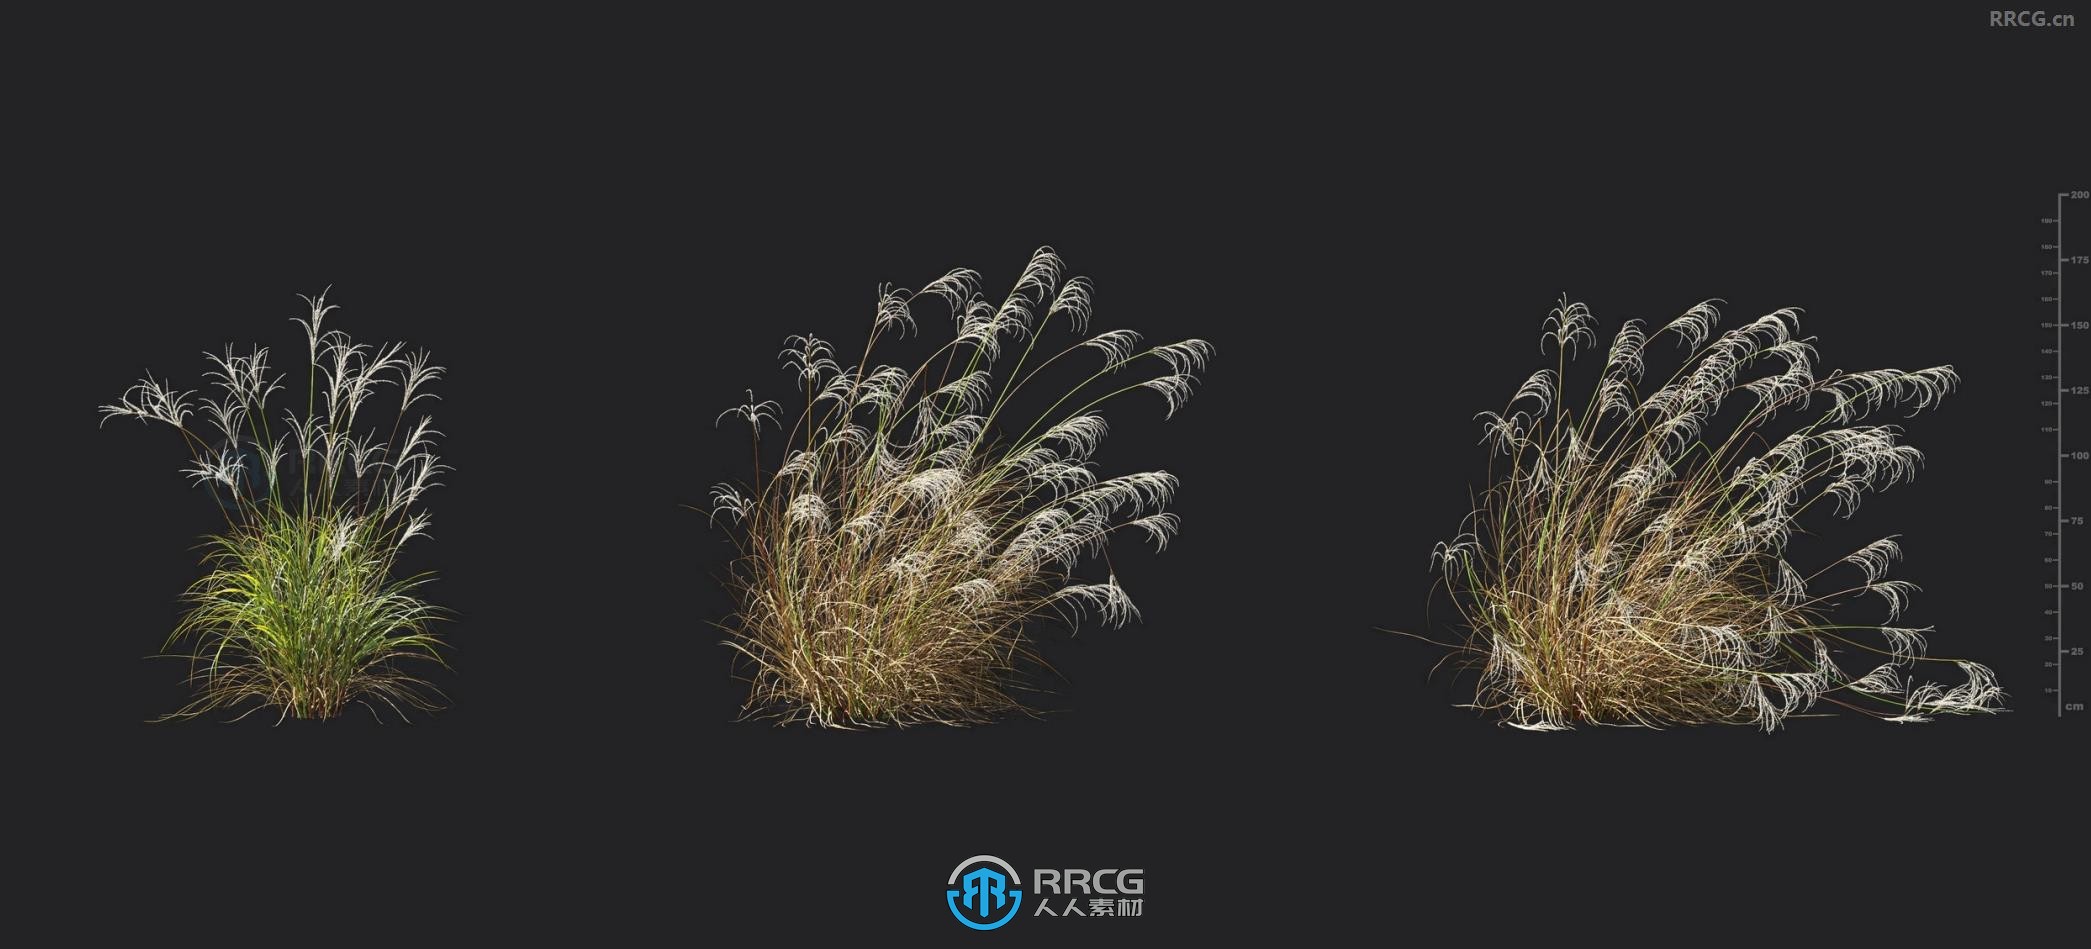 格桑花草羽毛苇草新西兰毛刺草喜马拉雅仙草等植物3D模型合集